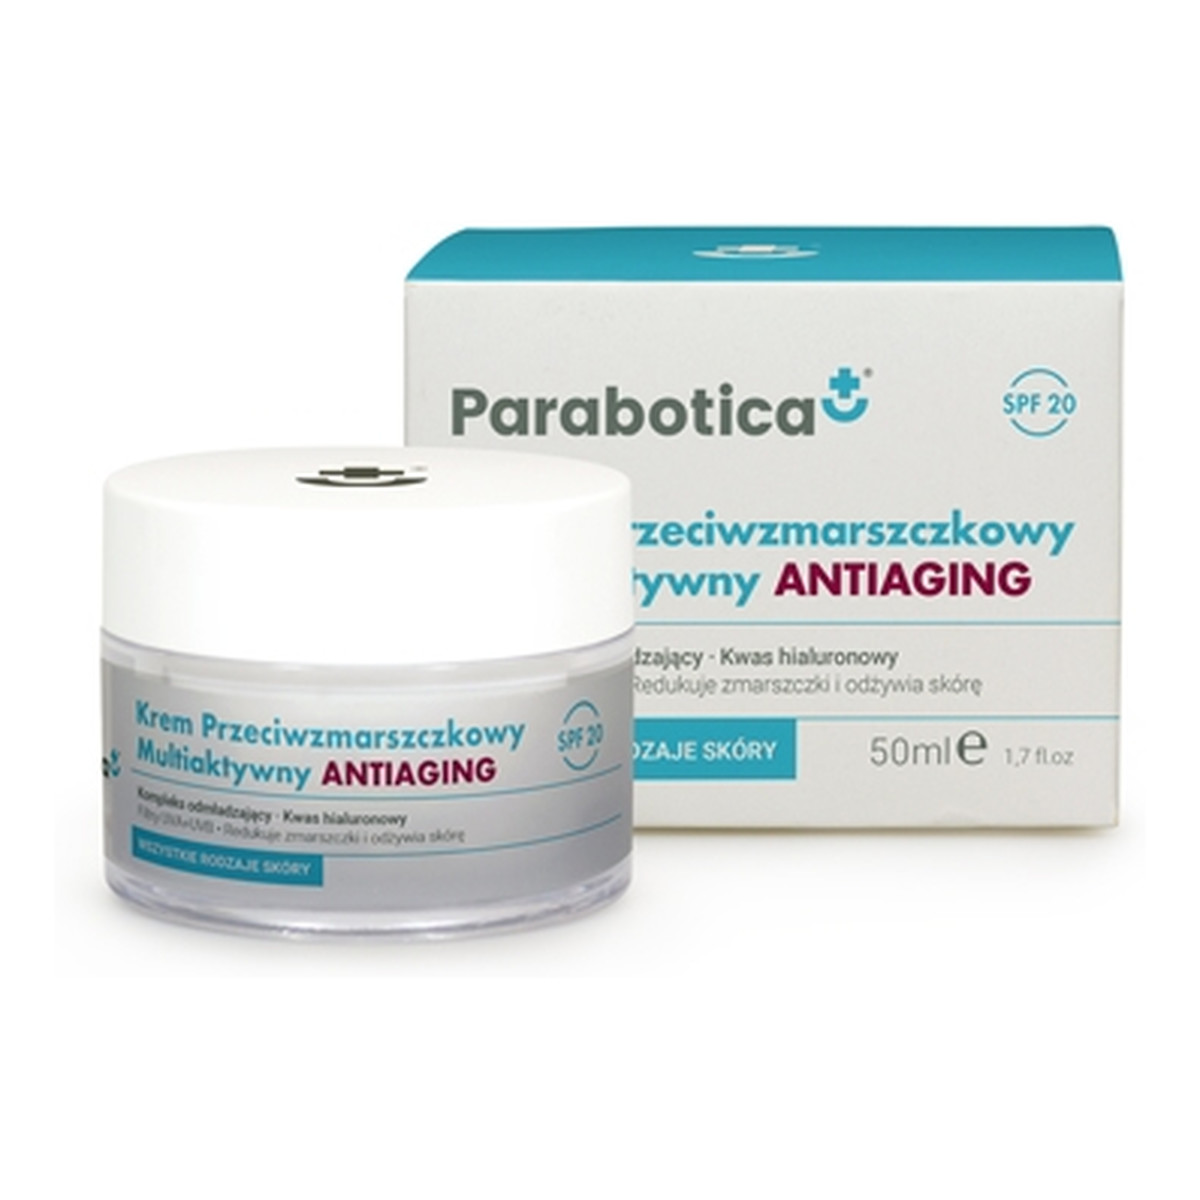 Parabotica Antiaging Multiaktywny krem SPF20 przeciwzmarszczkowy 50ml